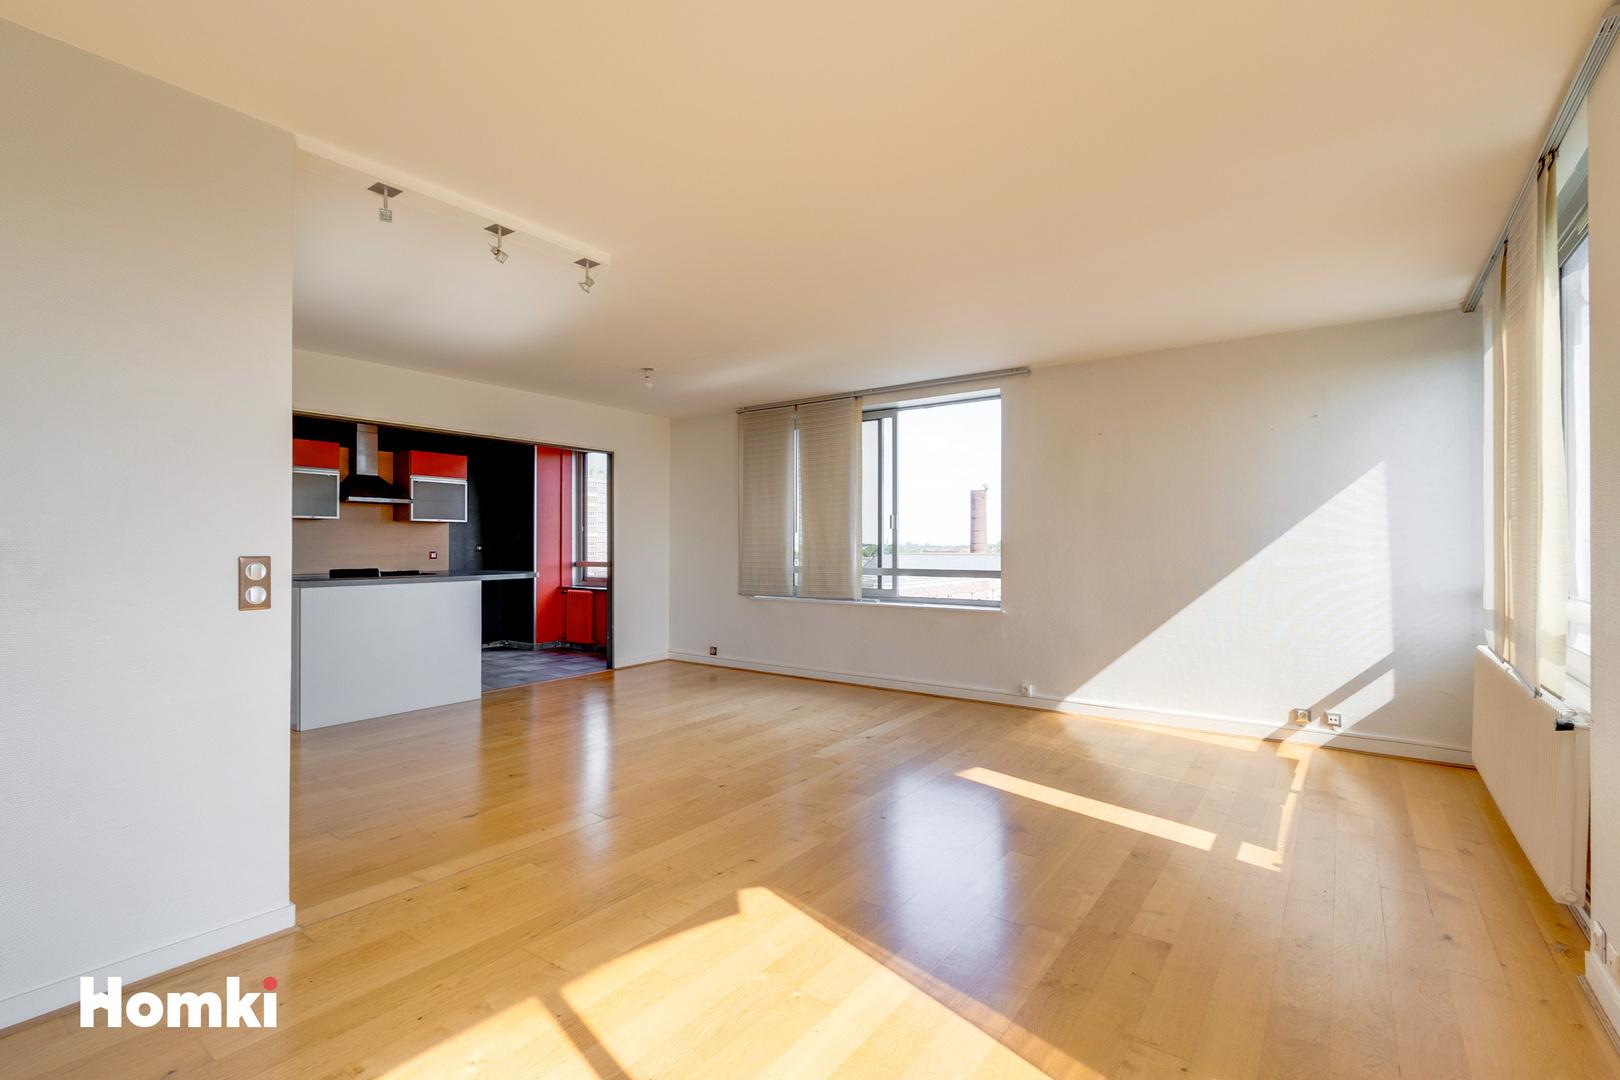 Homki - Vente Appartement  de 92.0 m² à Roubaix 59100